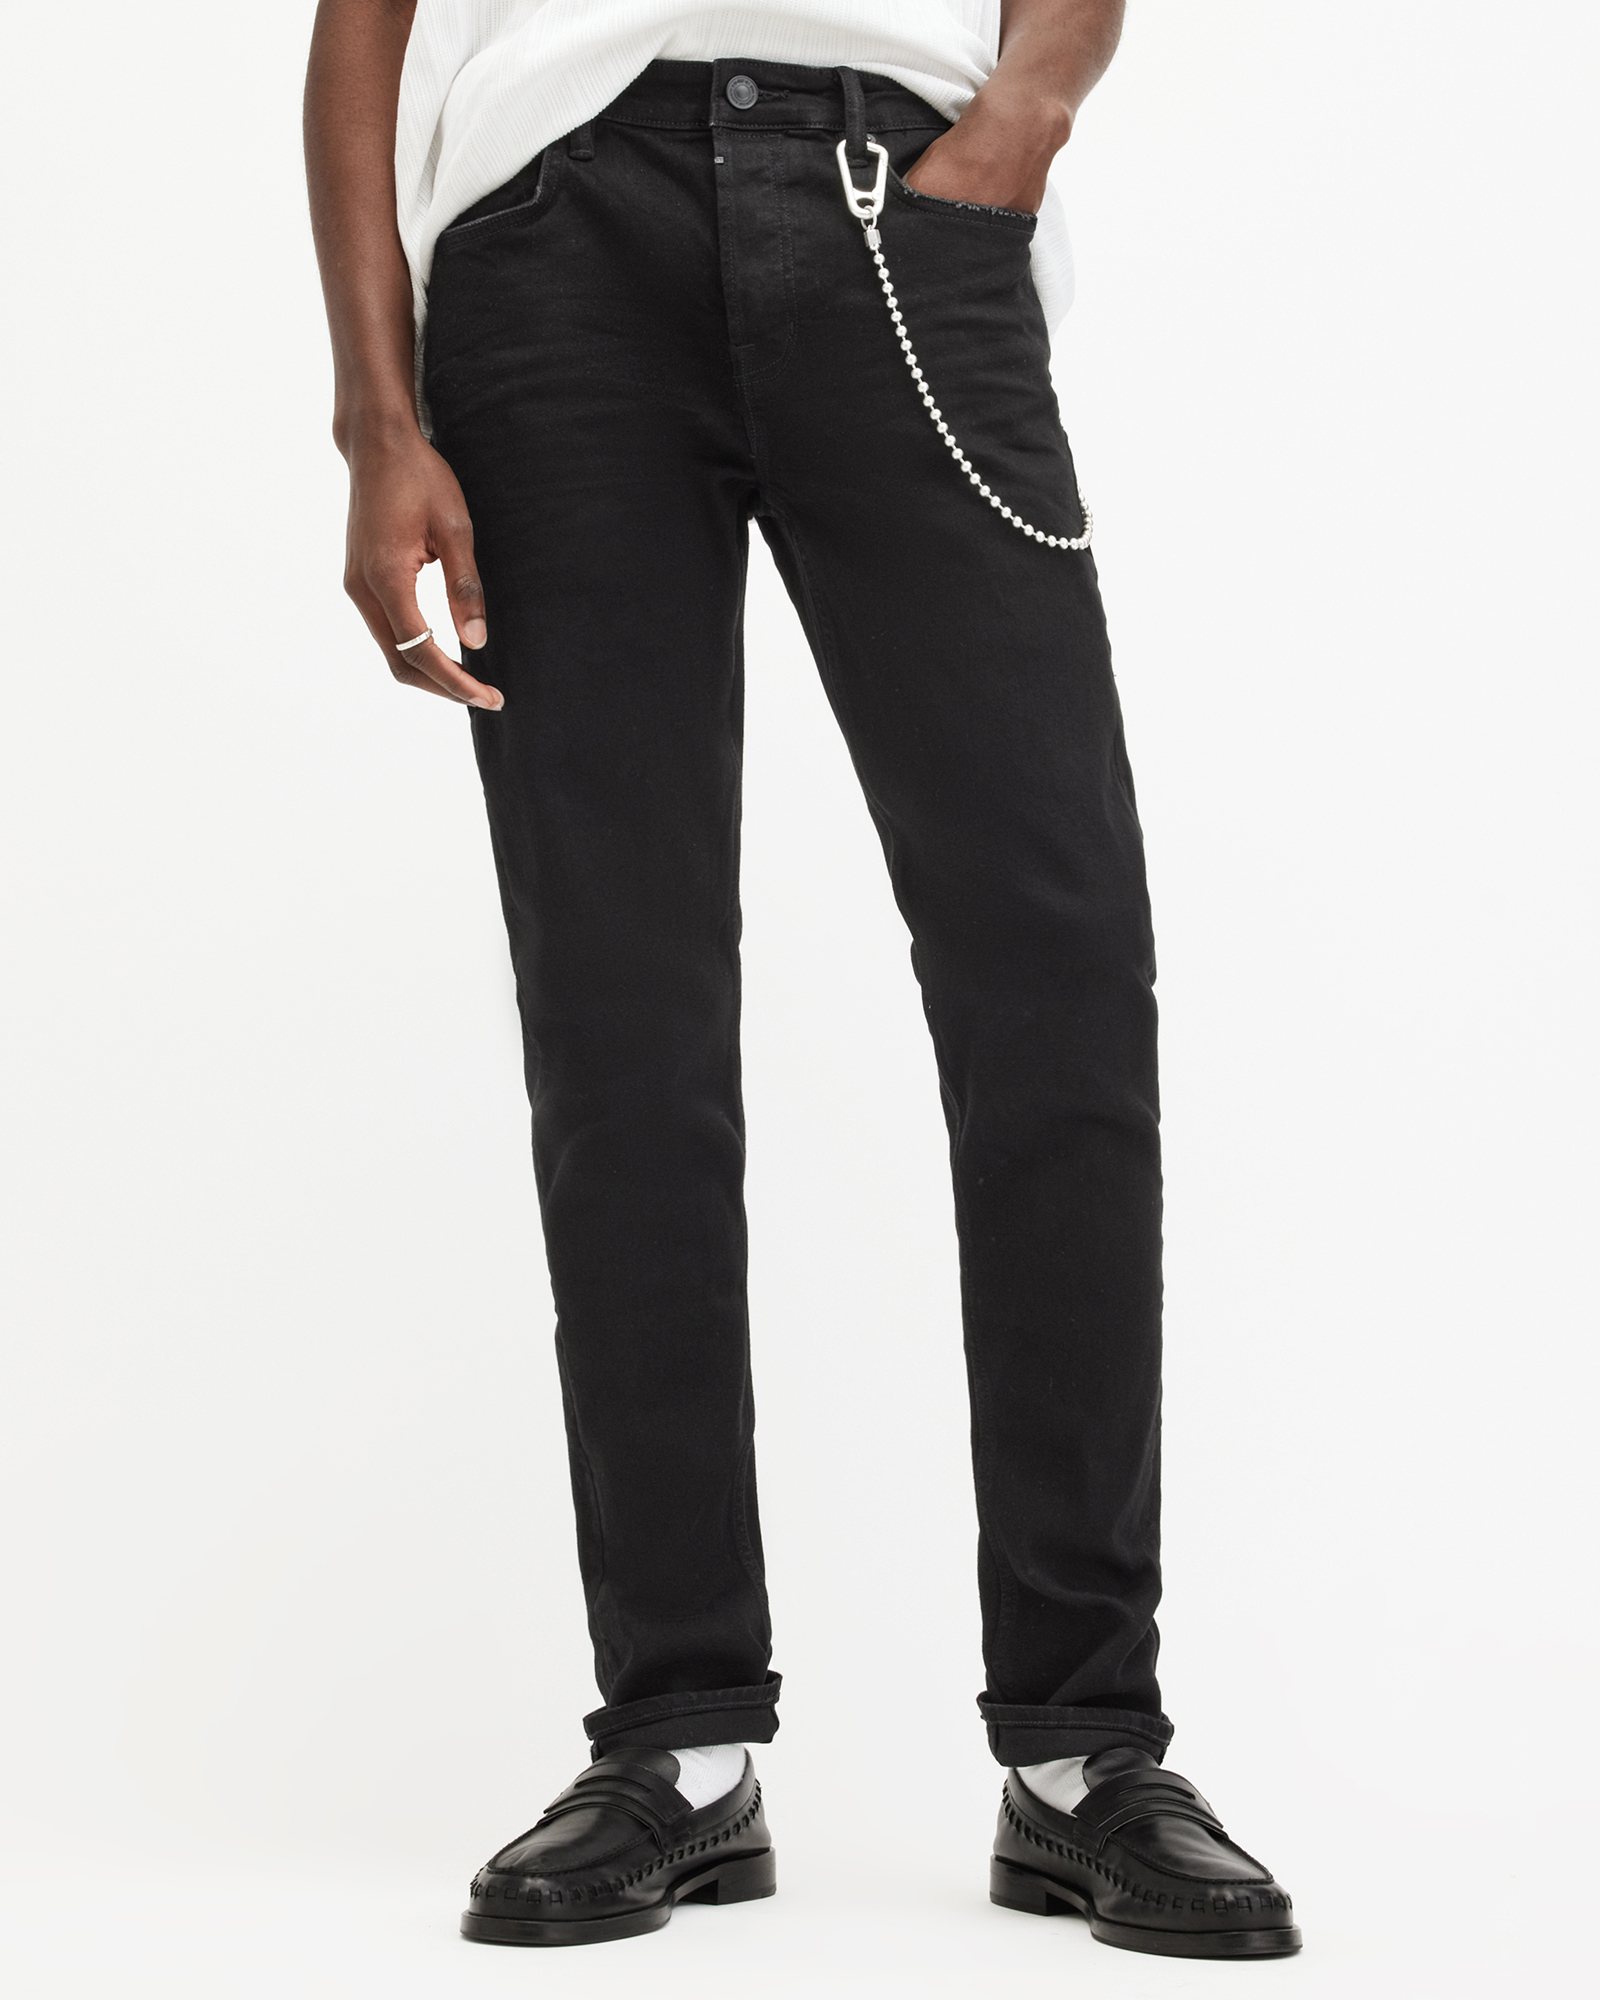 AllSaints Men's Cotton Traditional Cigarette Skinny Jeans, Black, Size: 28/L30